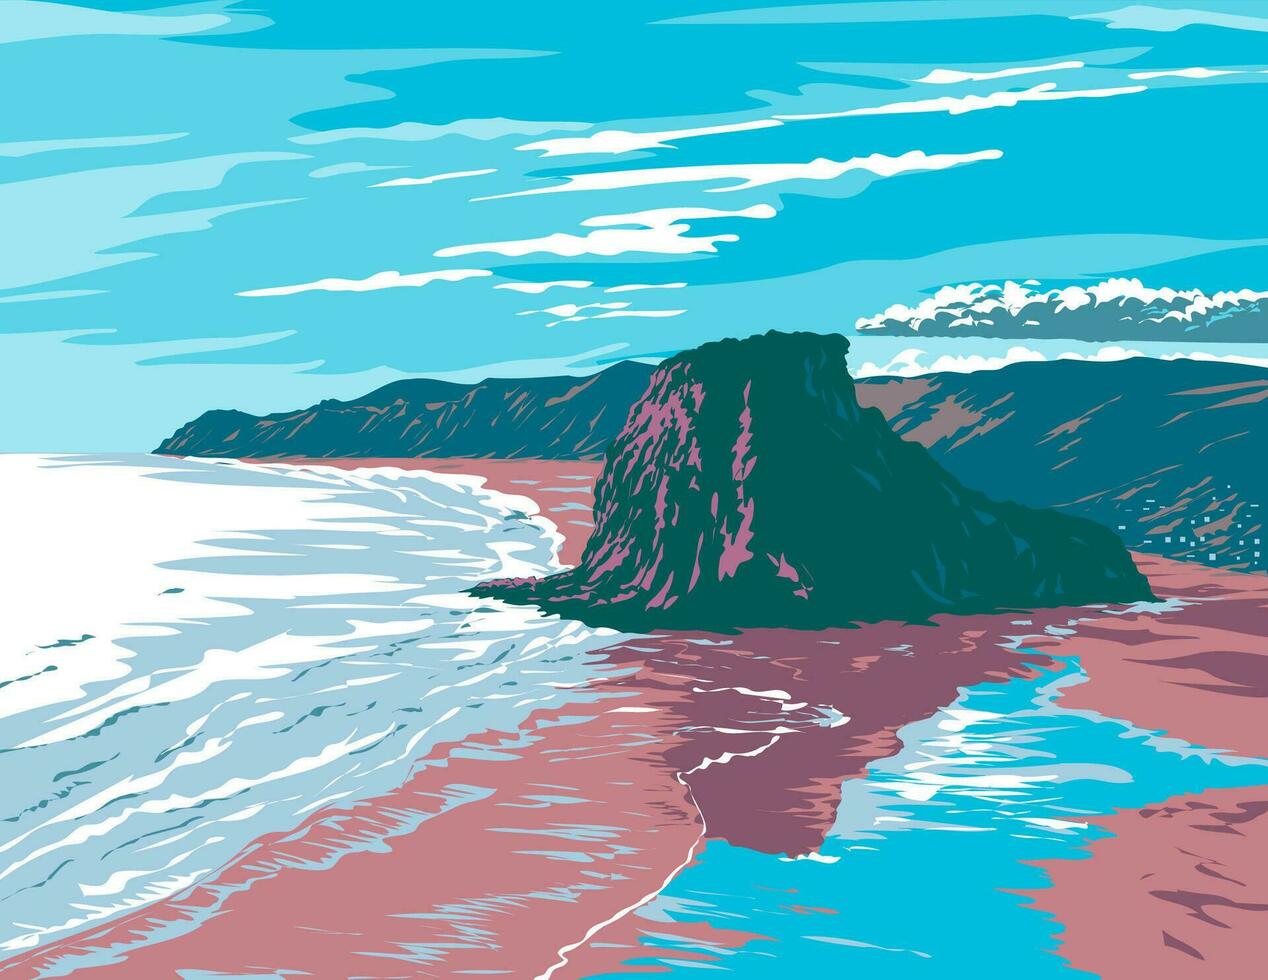 leeuw rots Aan piha strand in Auckland nieuw Zeeland wpa poster kunst vector